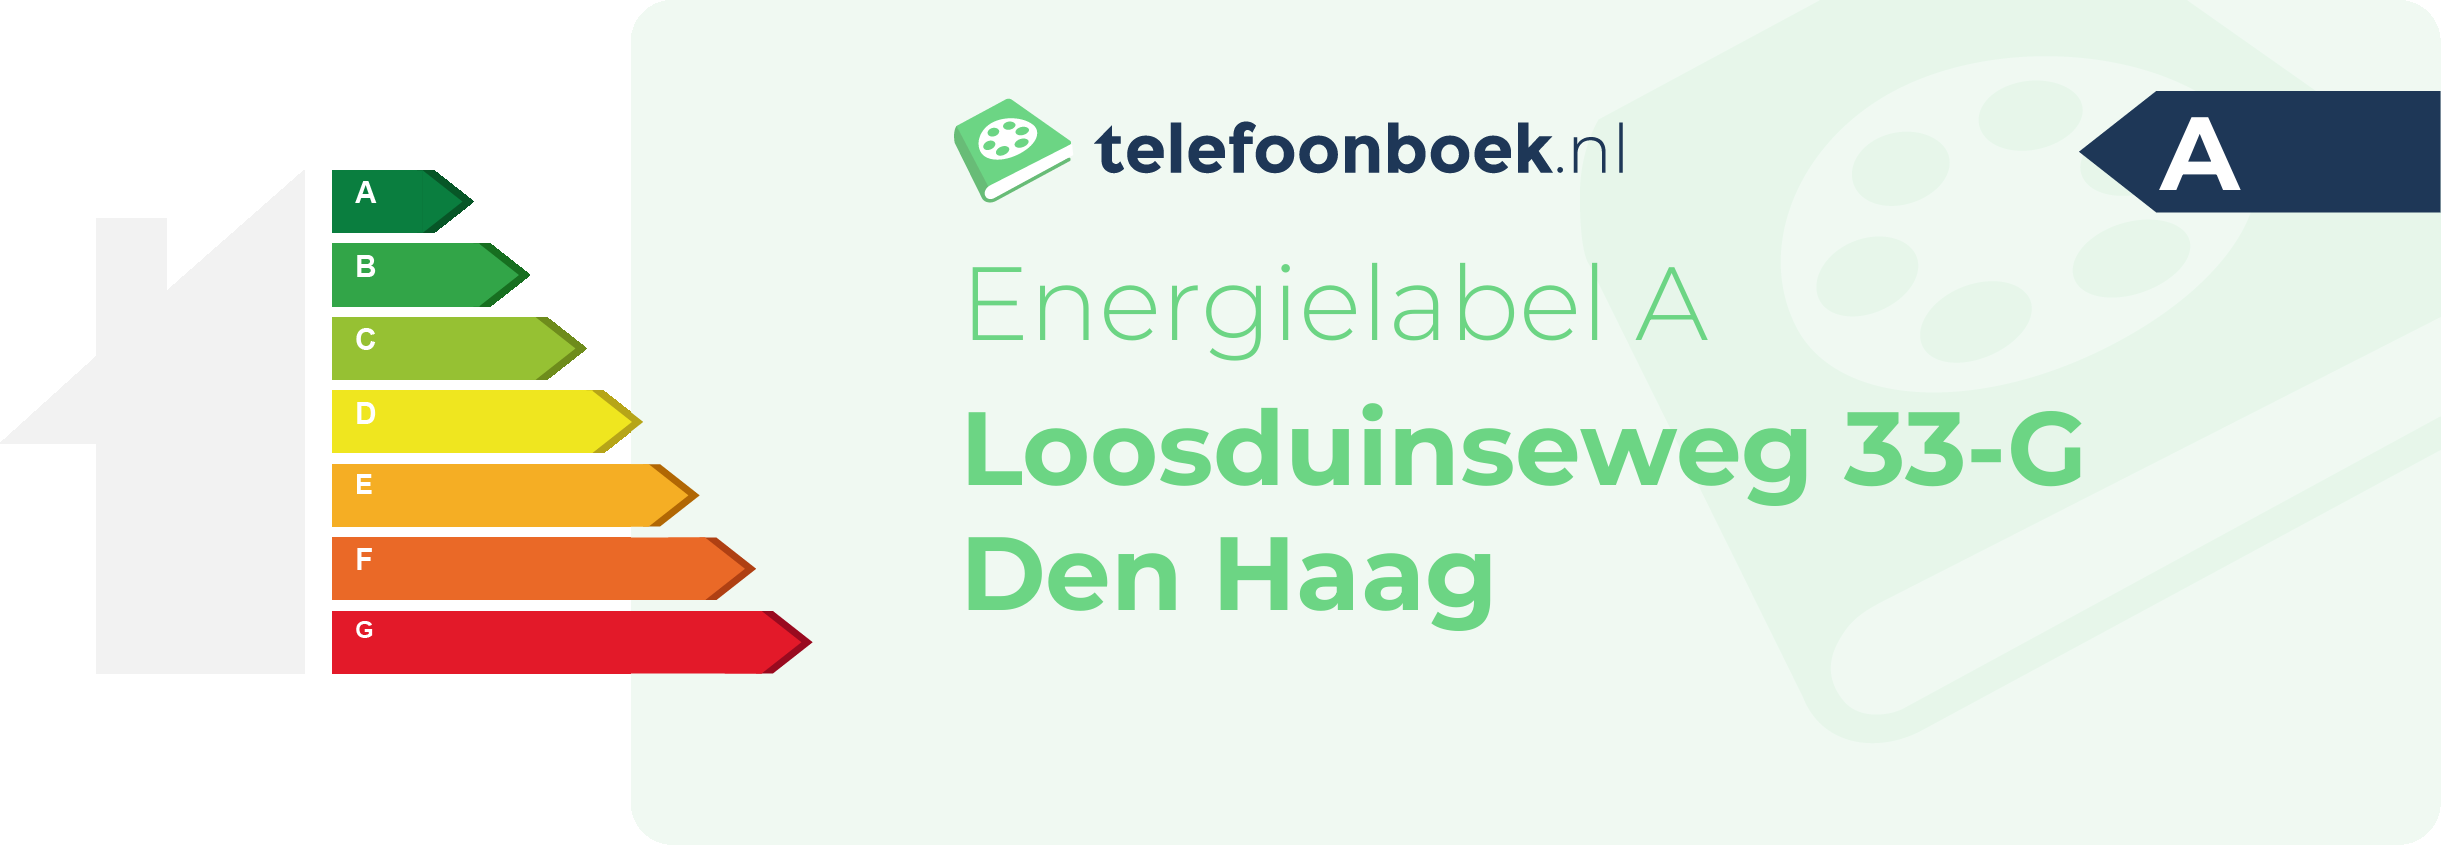 Energielabel Loosduinseweg 33-G Den Haag